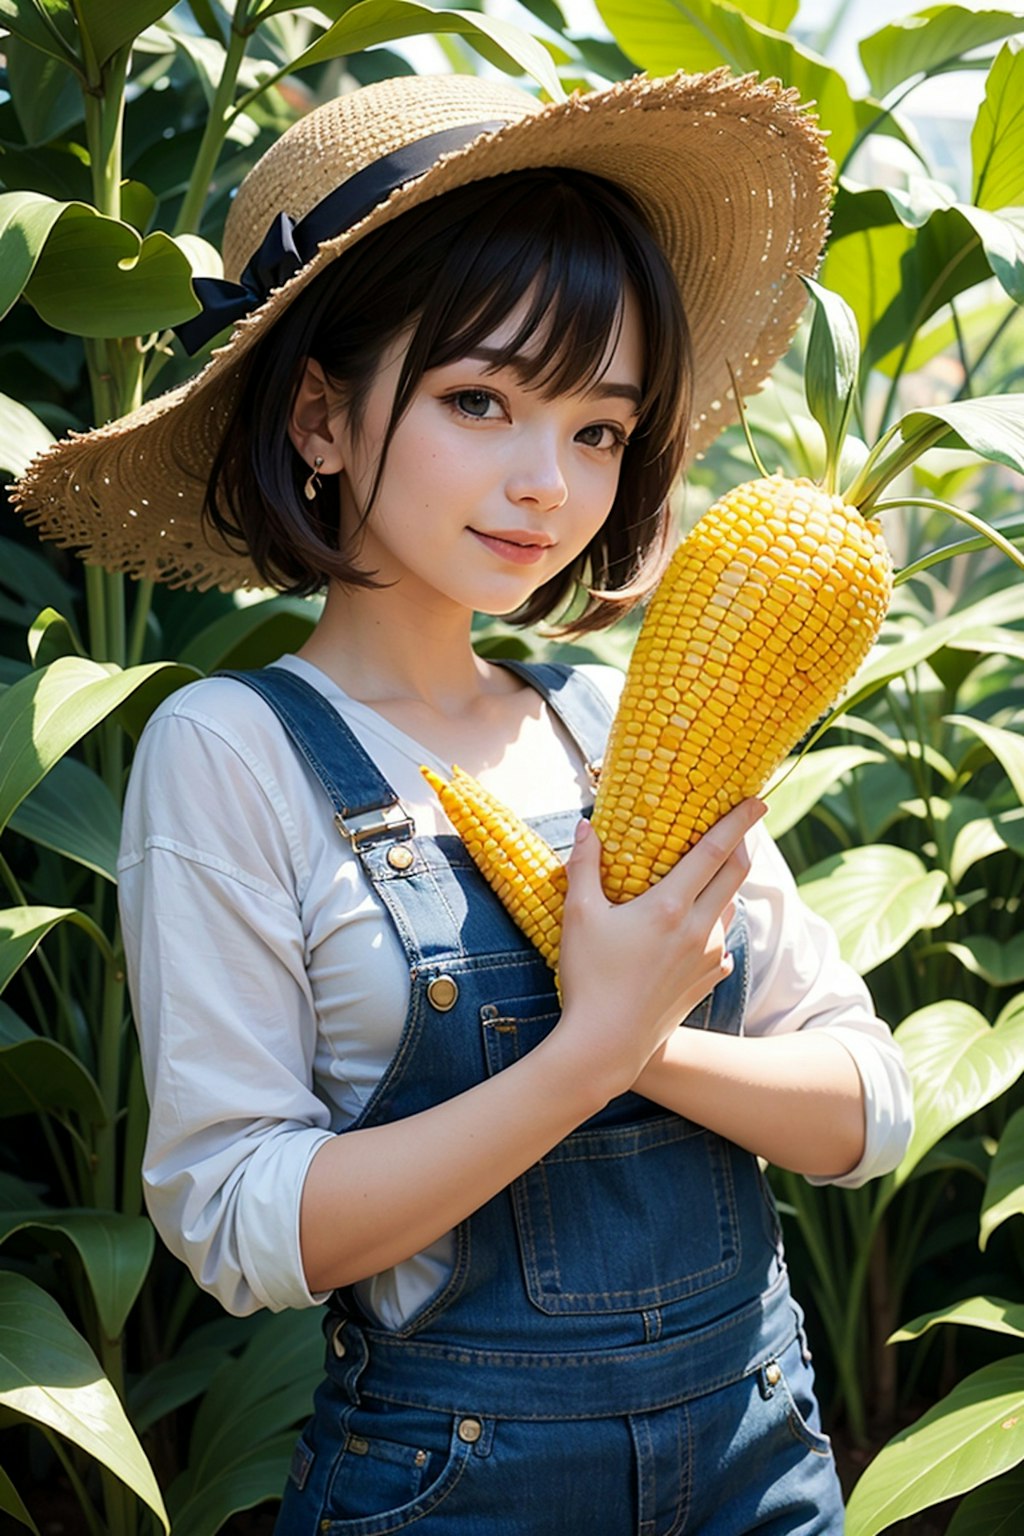 Is it corn?